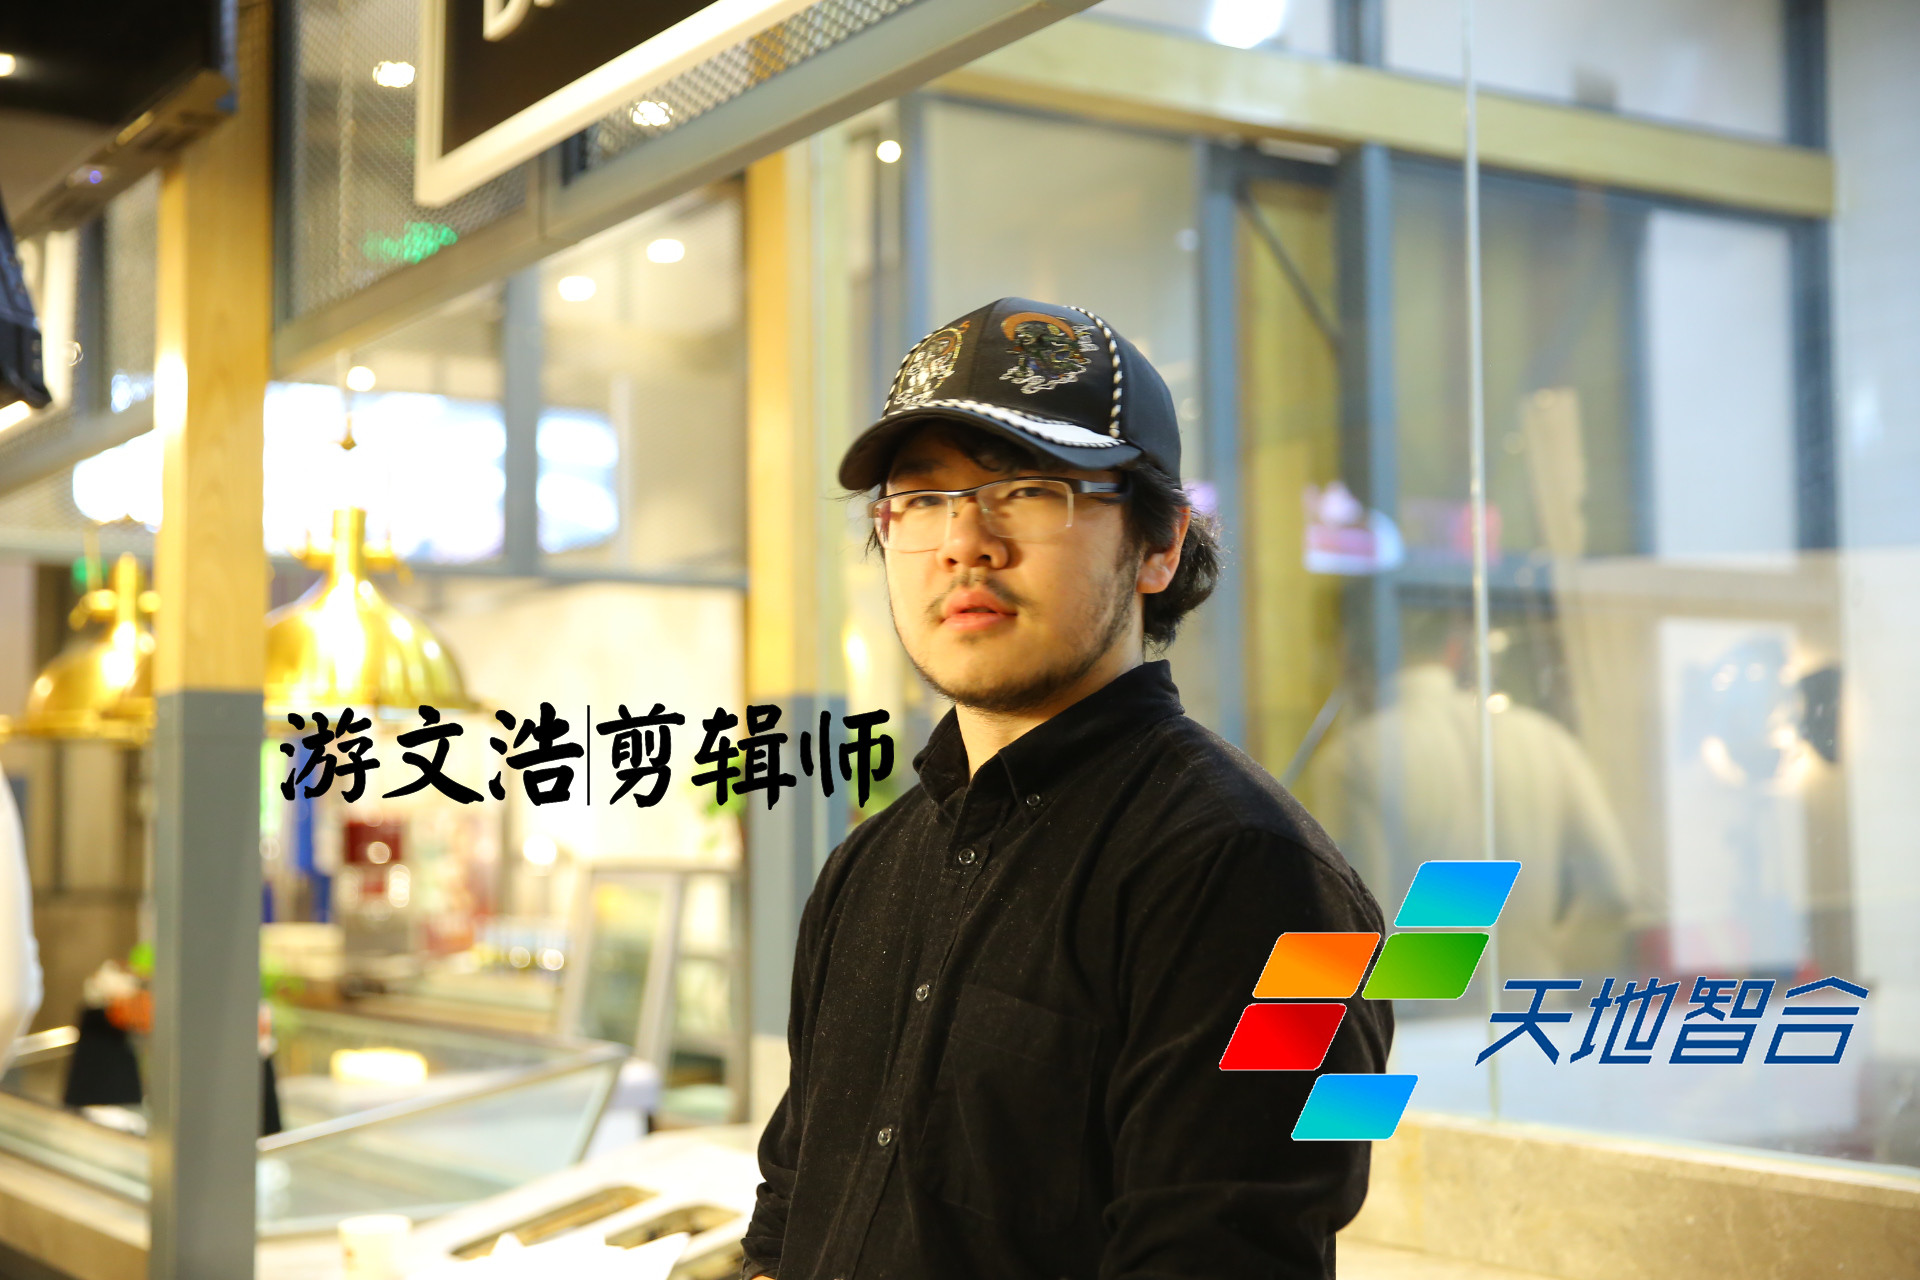 动漫专业毕业生游文浩是一名技术娴熟的剪辑师，现就职于北京天地智合影视文化传媒有限公司